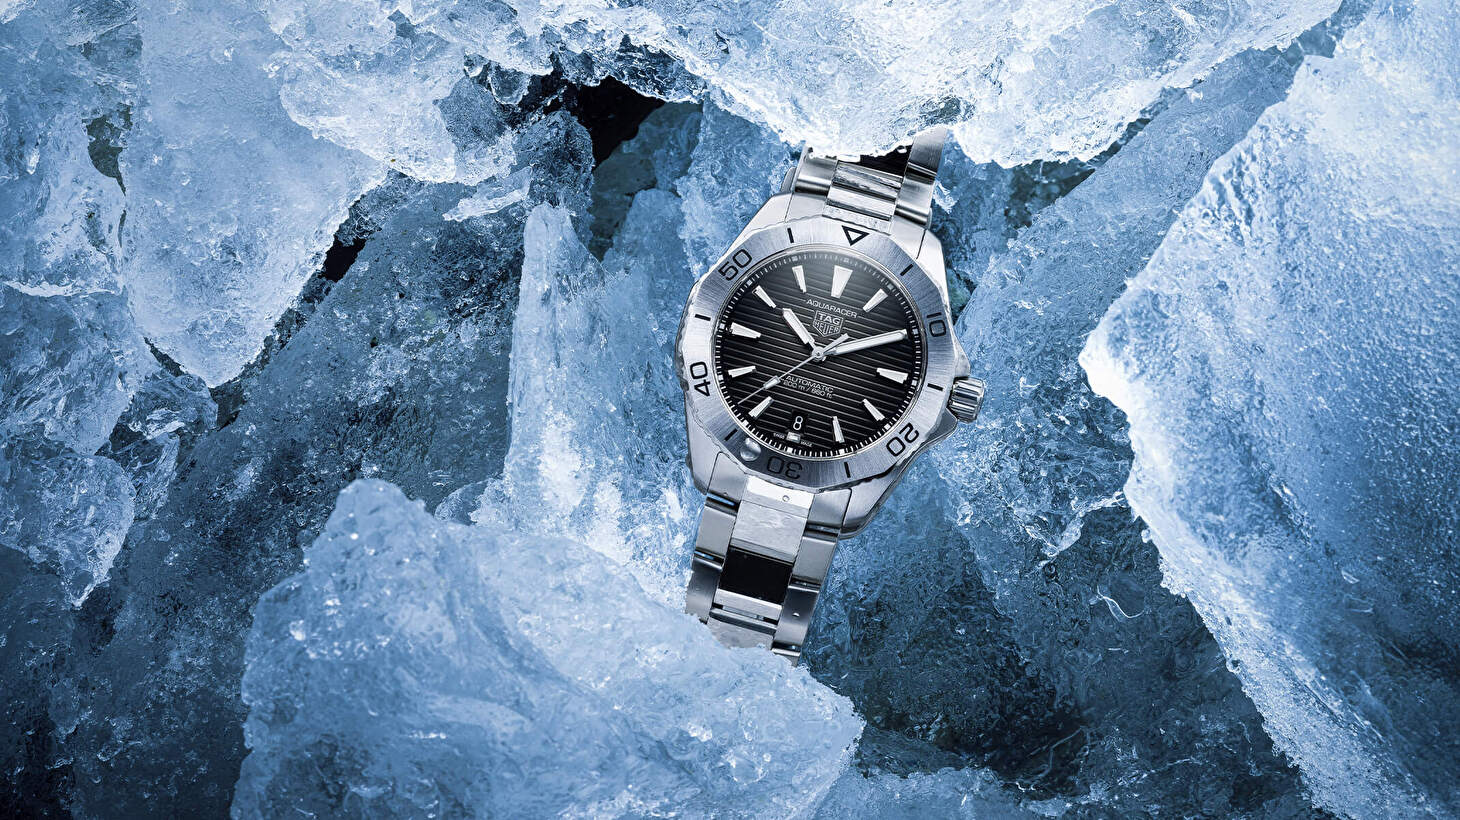 TAG Heuer представляет новые часы Aquaracer Professional 200